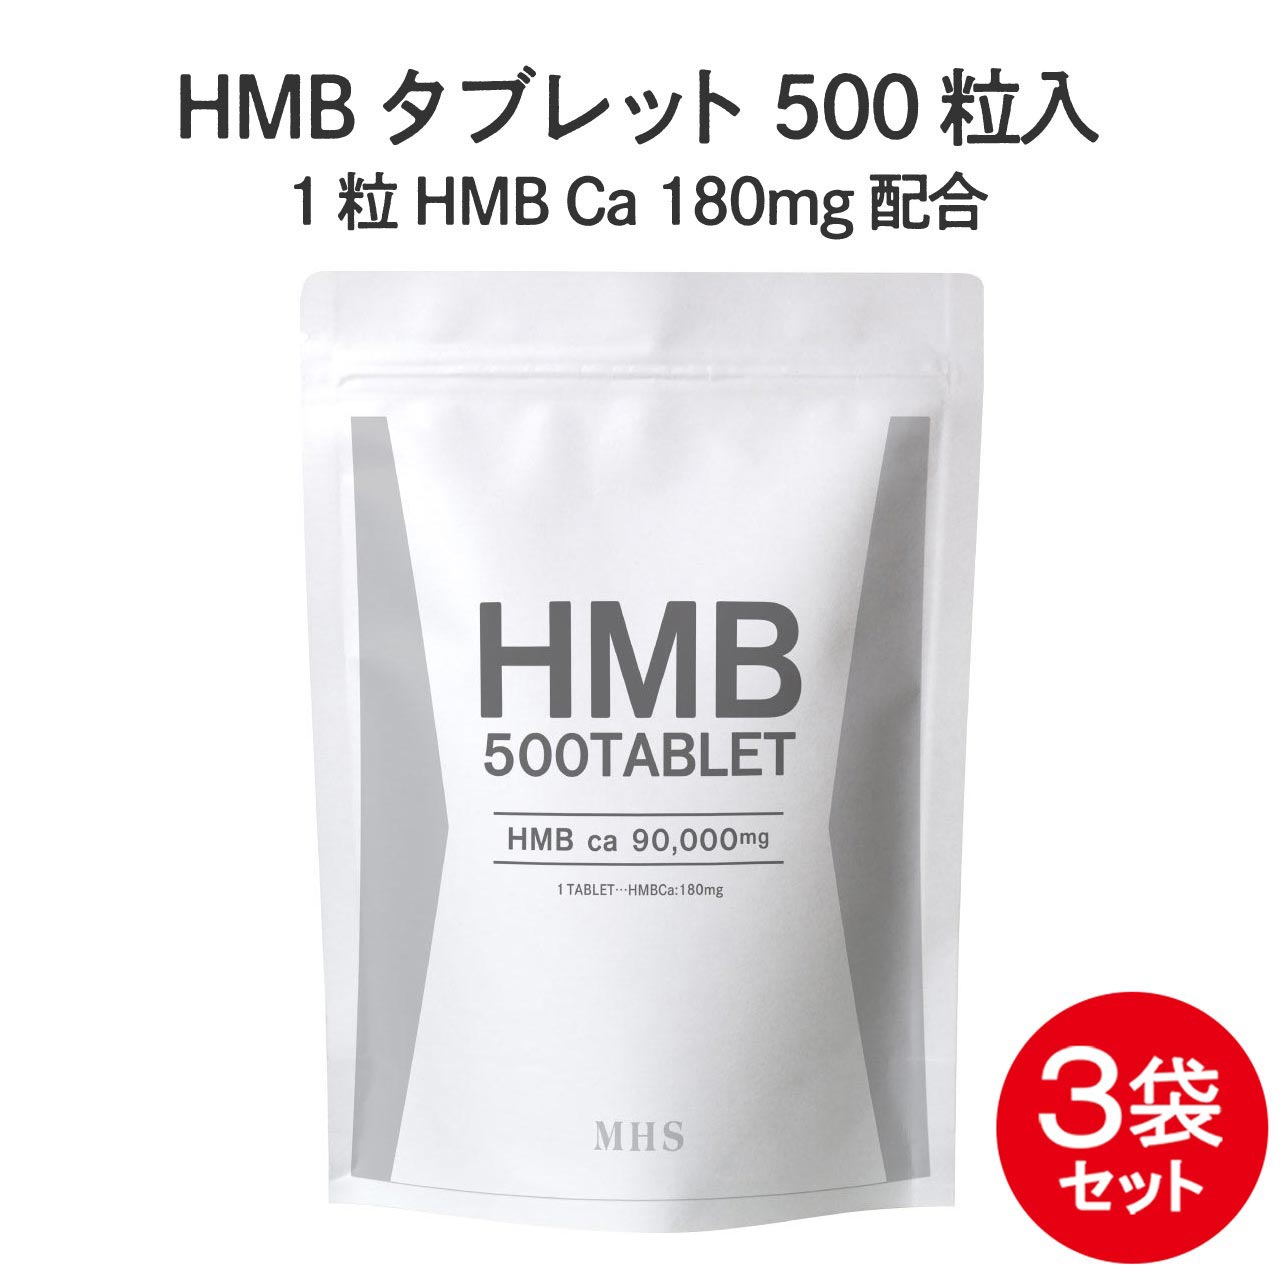 HMB サプリ タブレット 3袋 セット 1500粒 約3ヶ月分 HMBカルシウム プロテイン BCAA クレアチン と一..